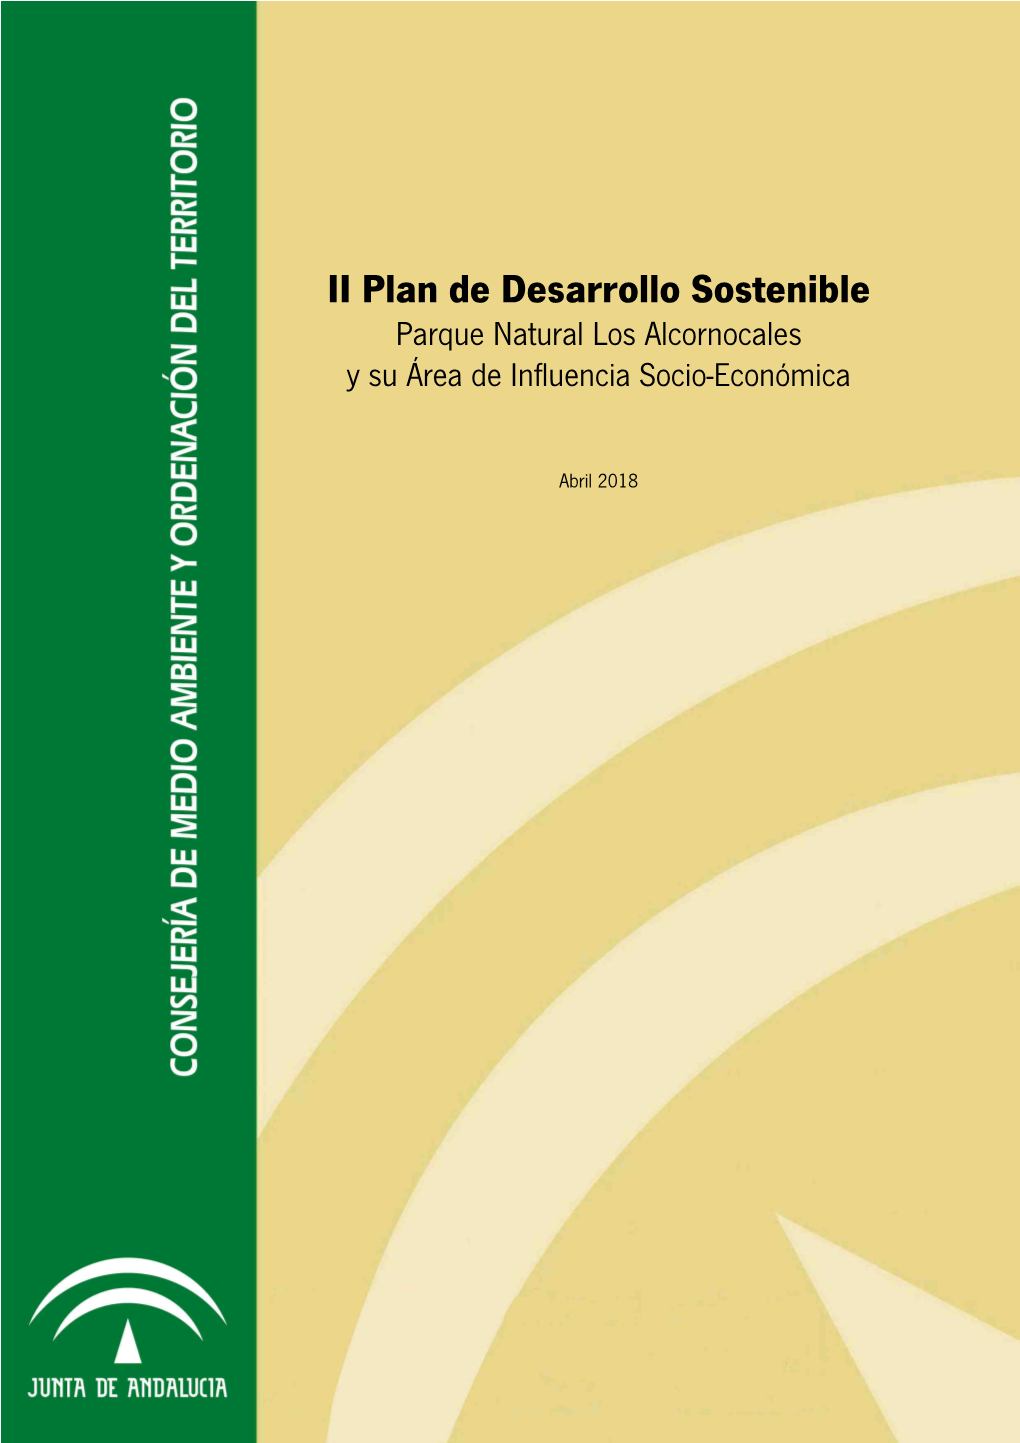 II Plan De Desarrollo Sostenible Parque Natural Los Alcornocales Y Su Área De Influencia Socio-Económica